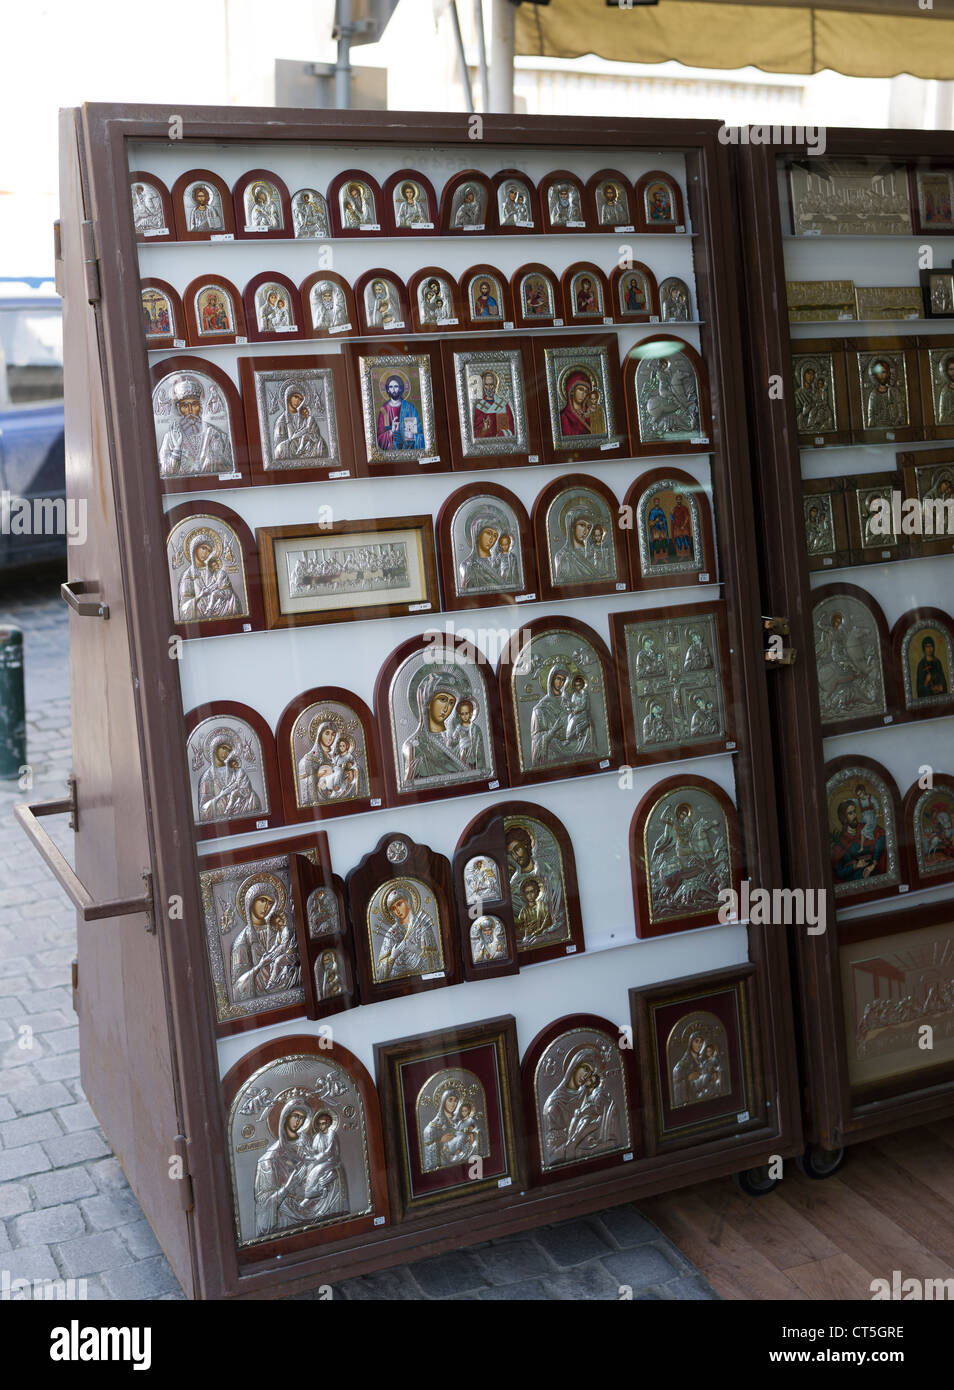 dh icona negozio LARNACA CIPRO GRECIA greco ortodosso religioso religione Foto Stock